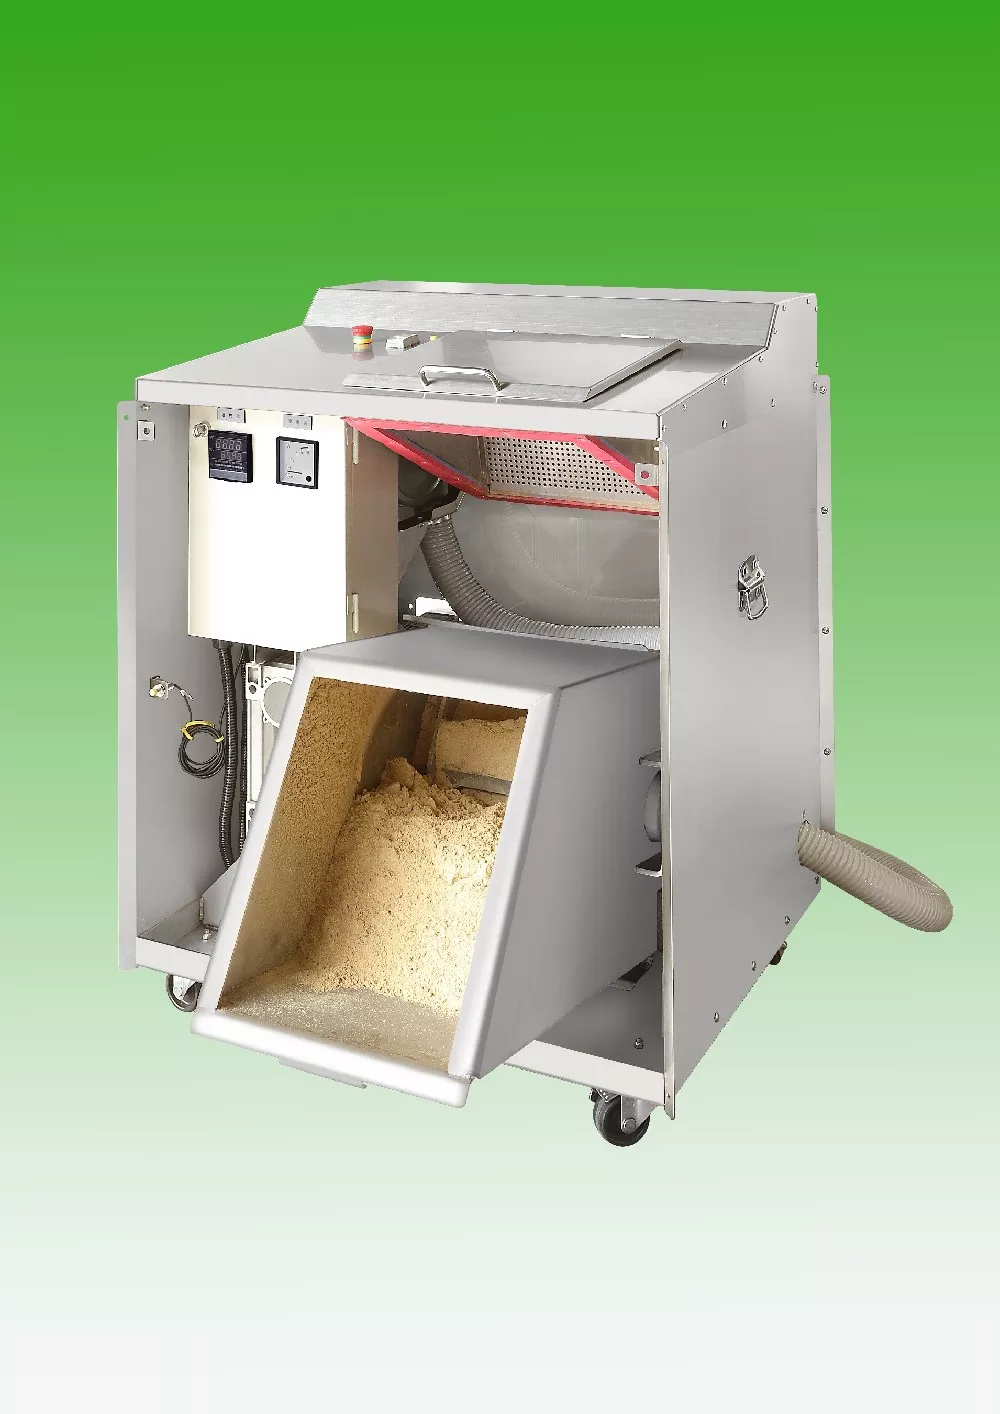 商用廚餘處理機展示介紹圖,機型TKK01 規格如下TKK01-060 乾燥研磨型廚餘處理容量為60公升 food waste disposer